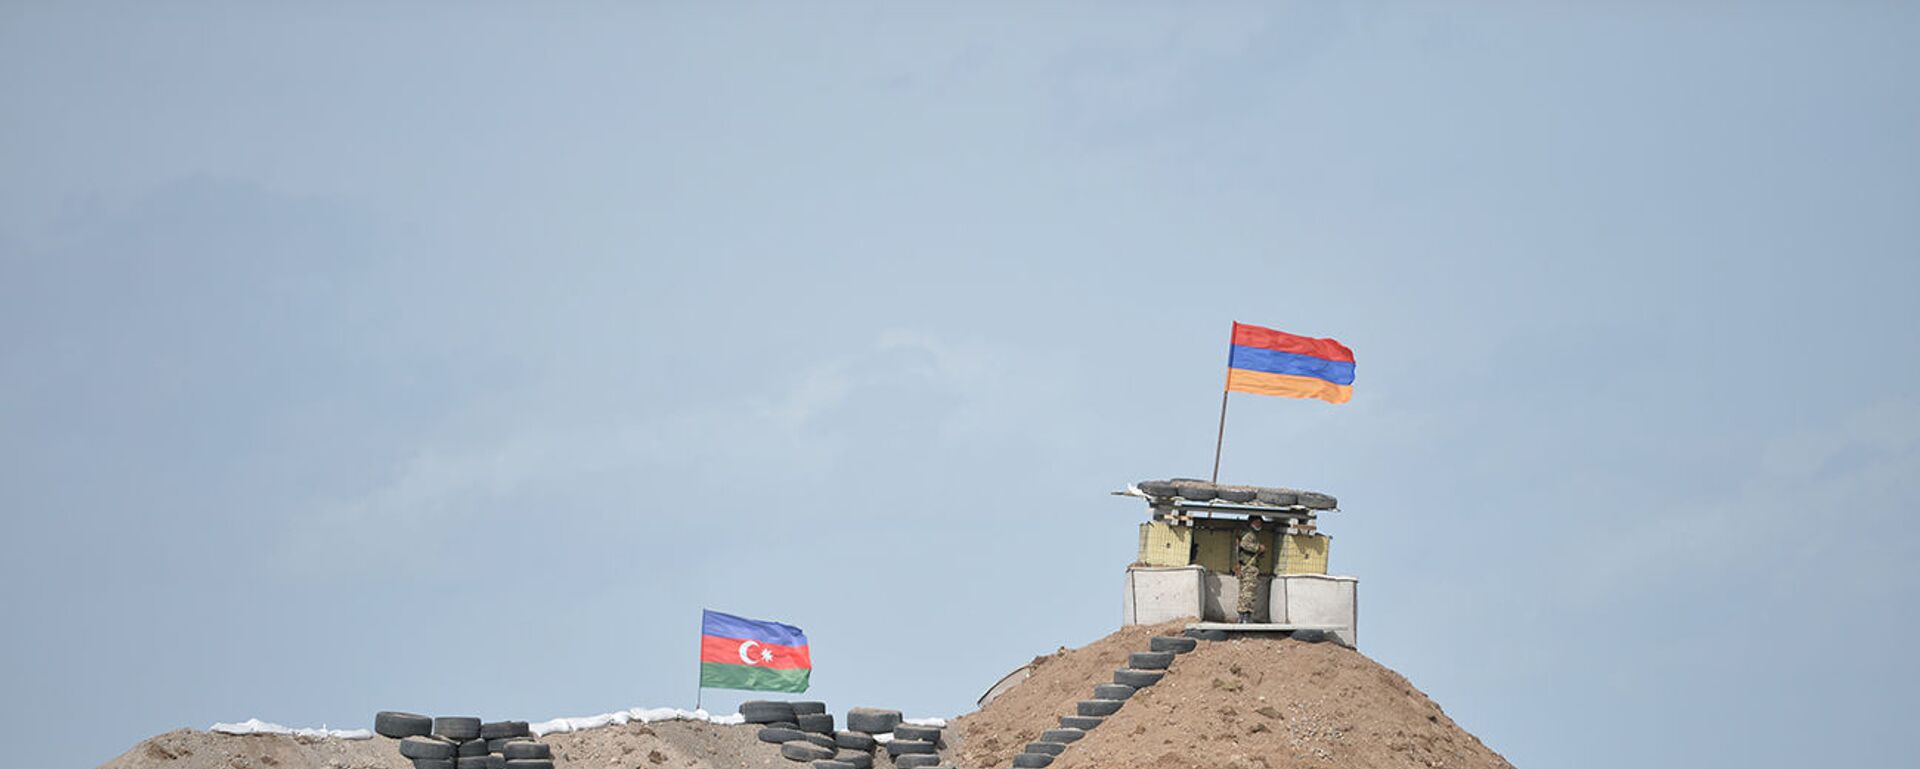 Военные посты на армянсо-азербайджанской границе - Sputnik Армения, 1920, 27.05.2021